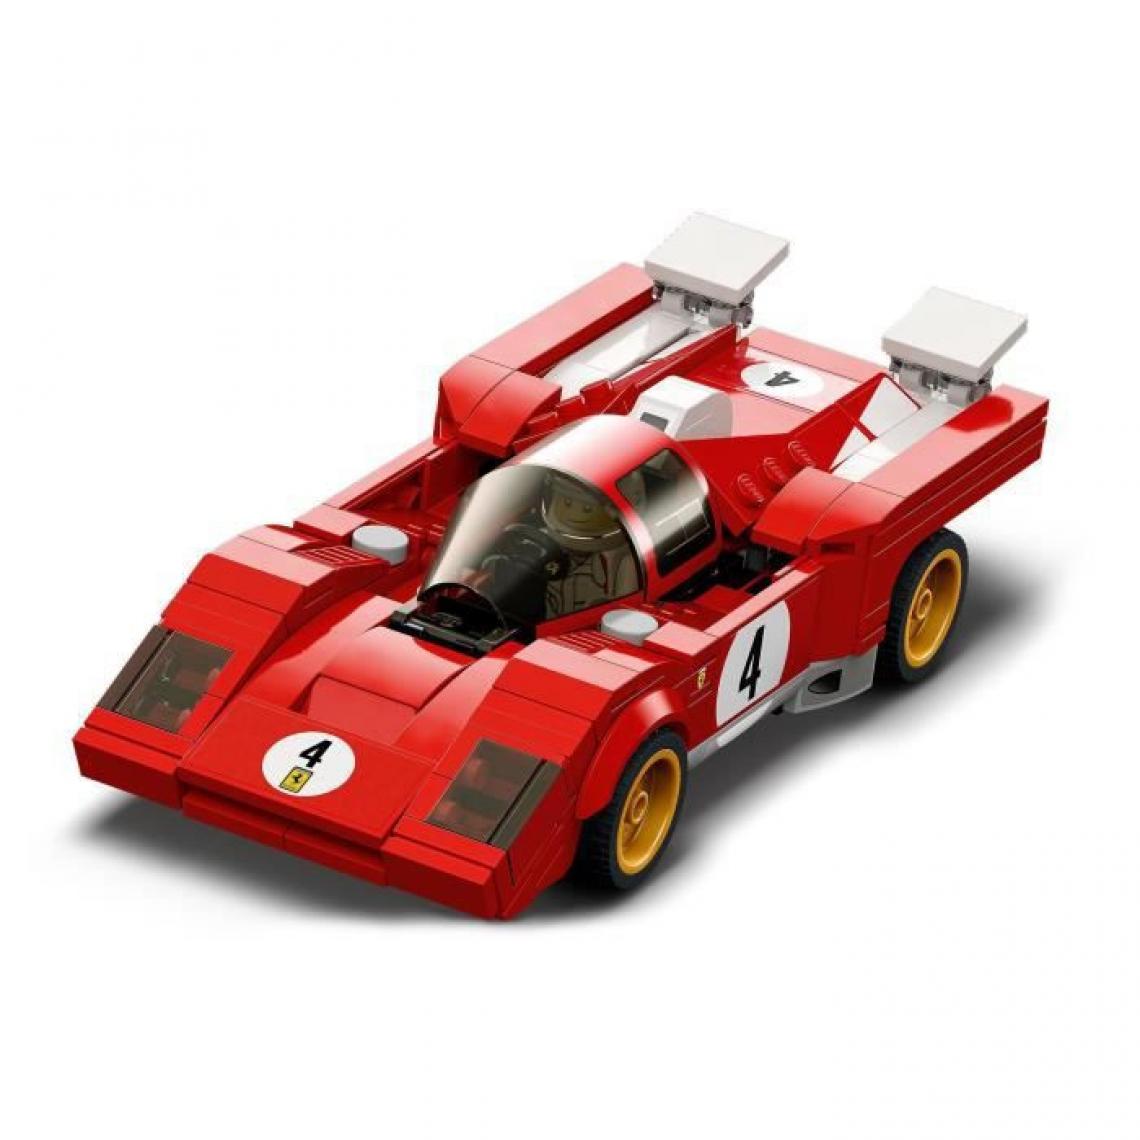 Lego - LEGO 76906 Speed Champions 1970 Ferrari 512 M Modele Réduit de Voiture de Course, Jouet de Construction pour Enfants - Briques et blocs